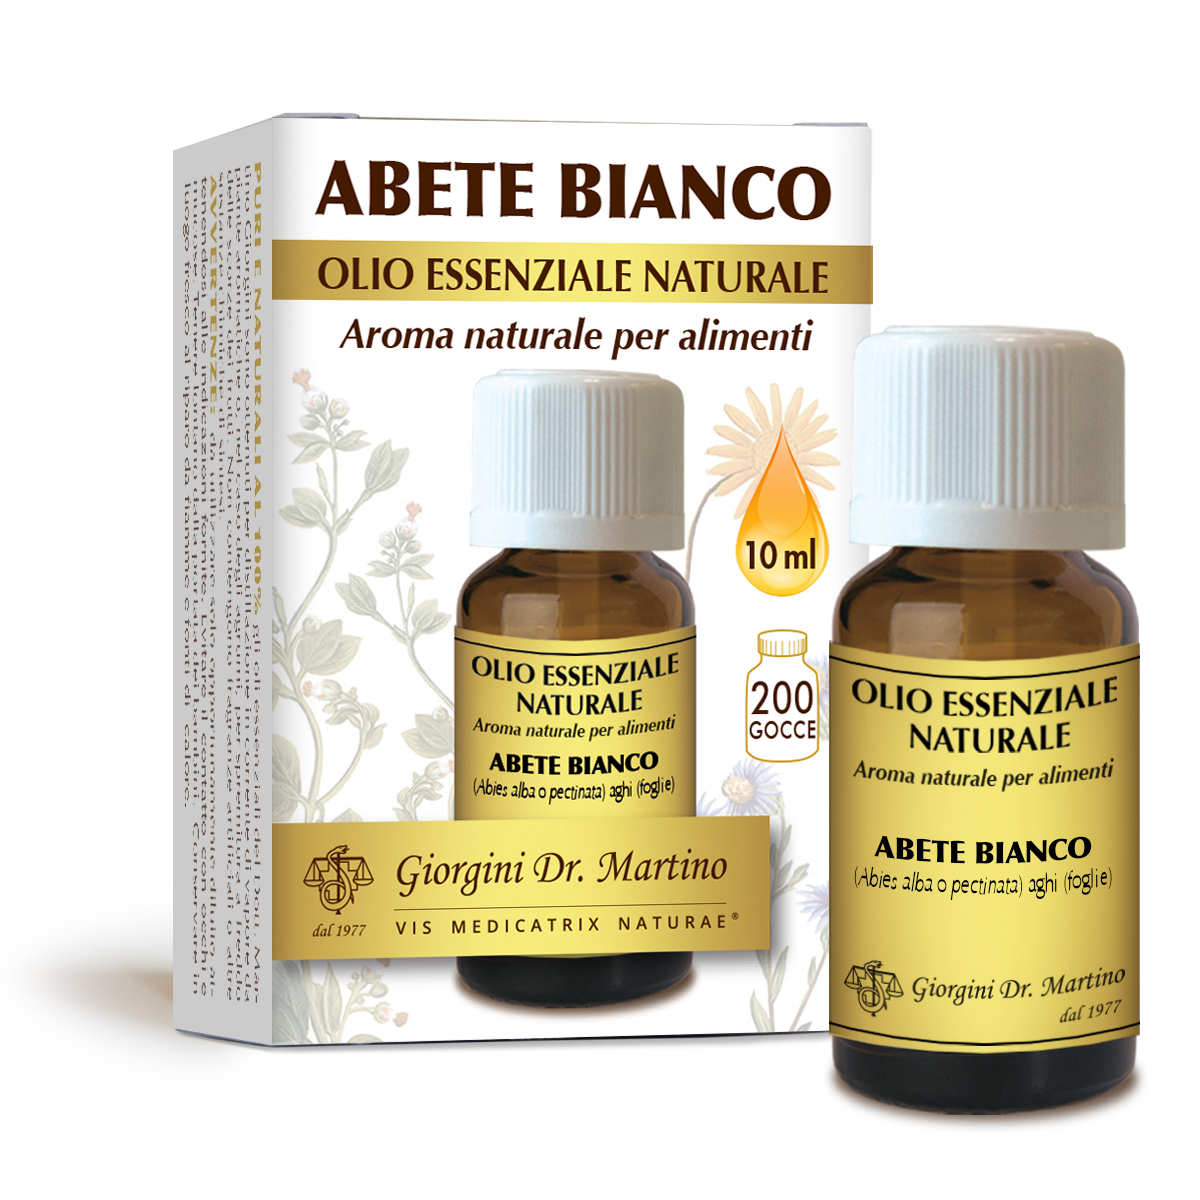 Image of Abete Bianco Olio Essenziale Naturale Giorgini Dr. Martino 10ml